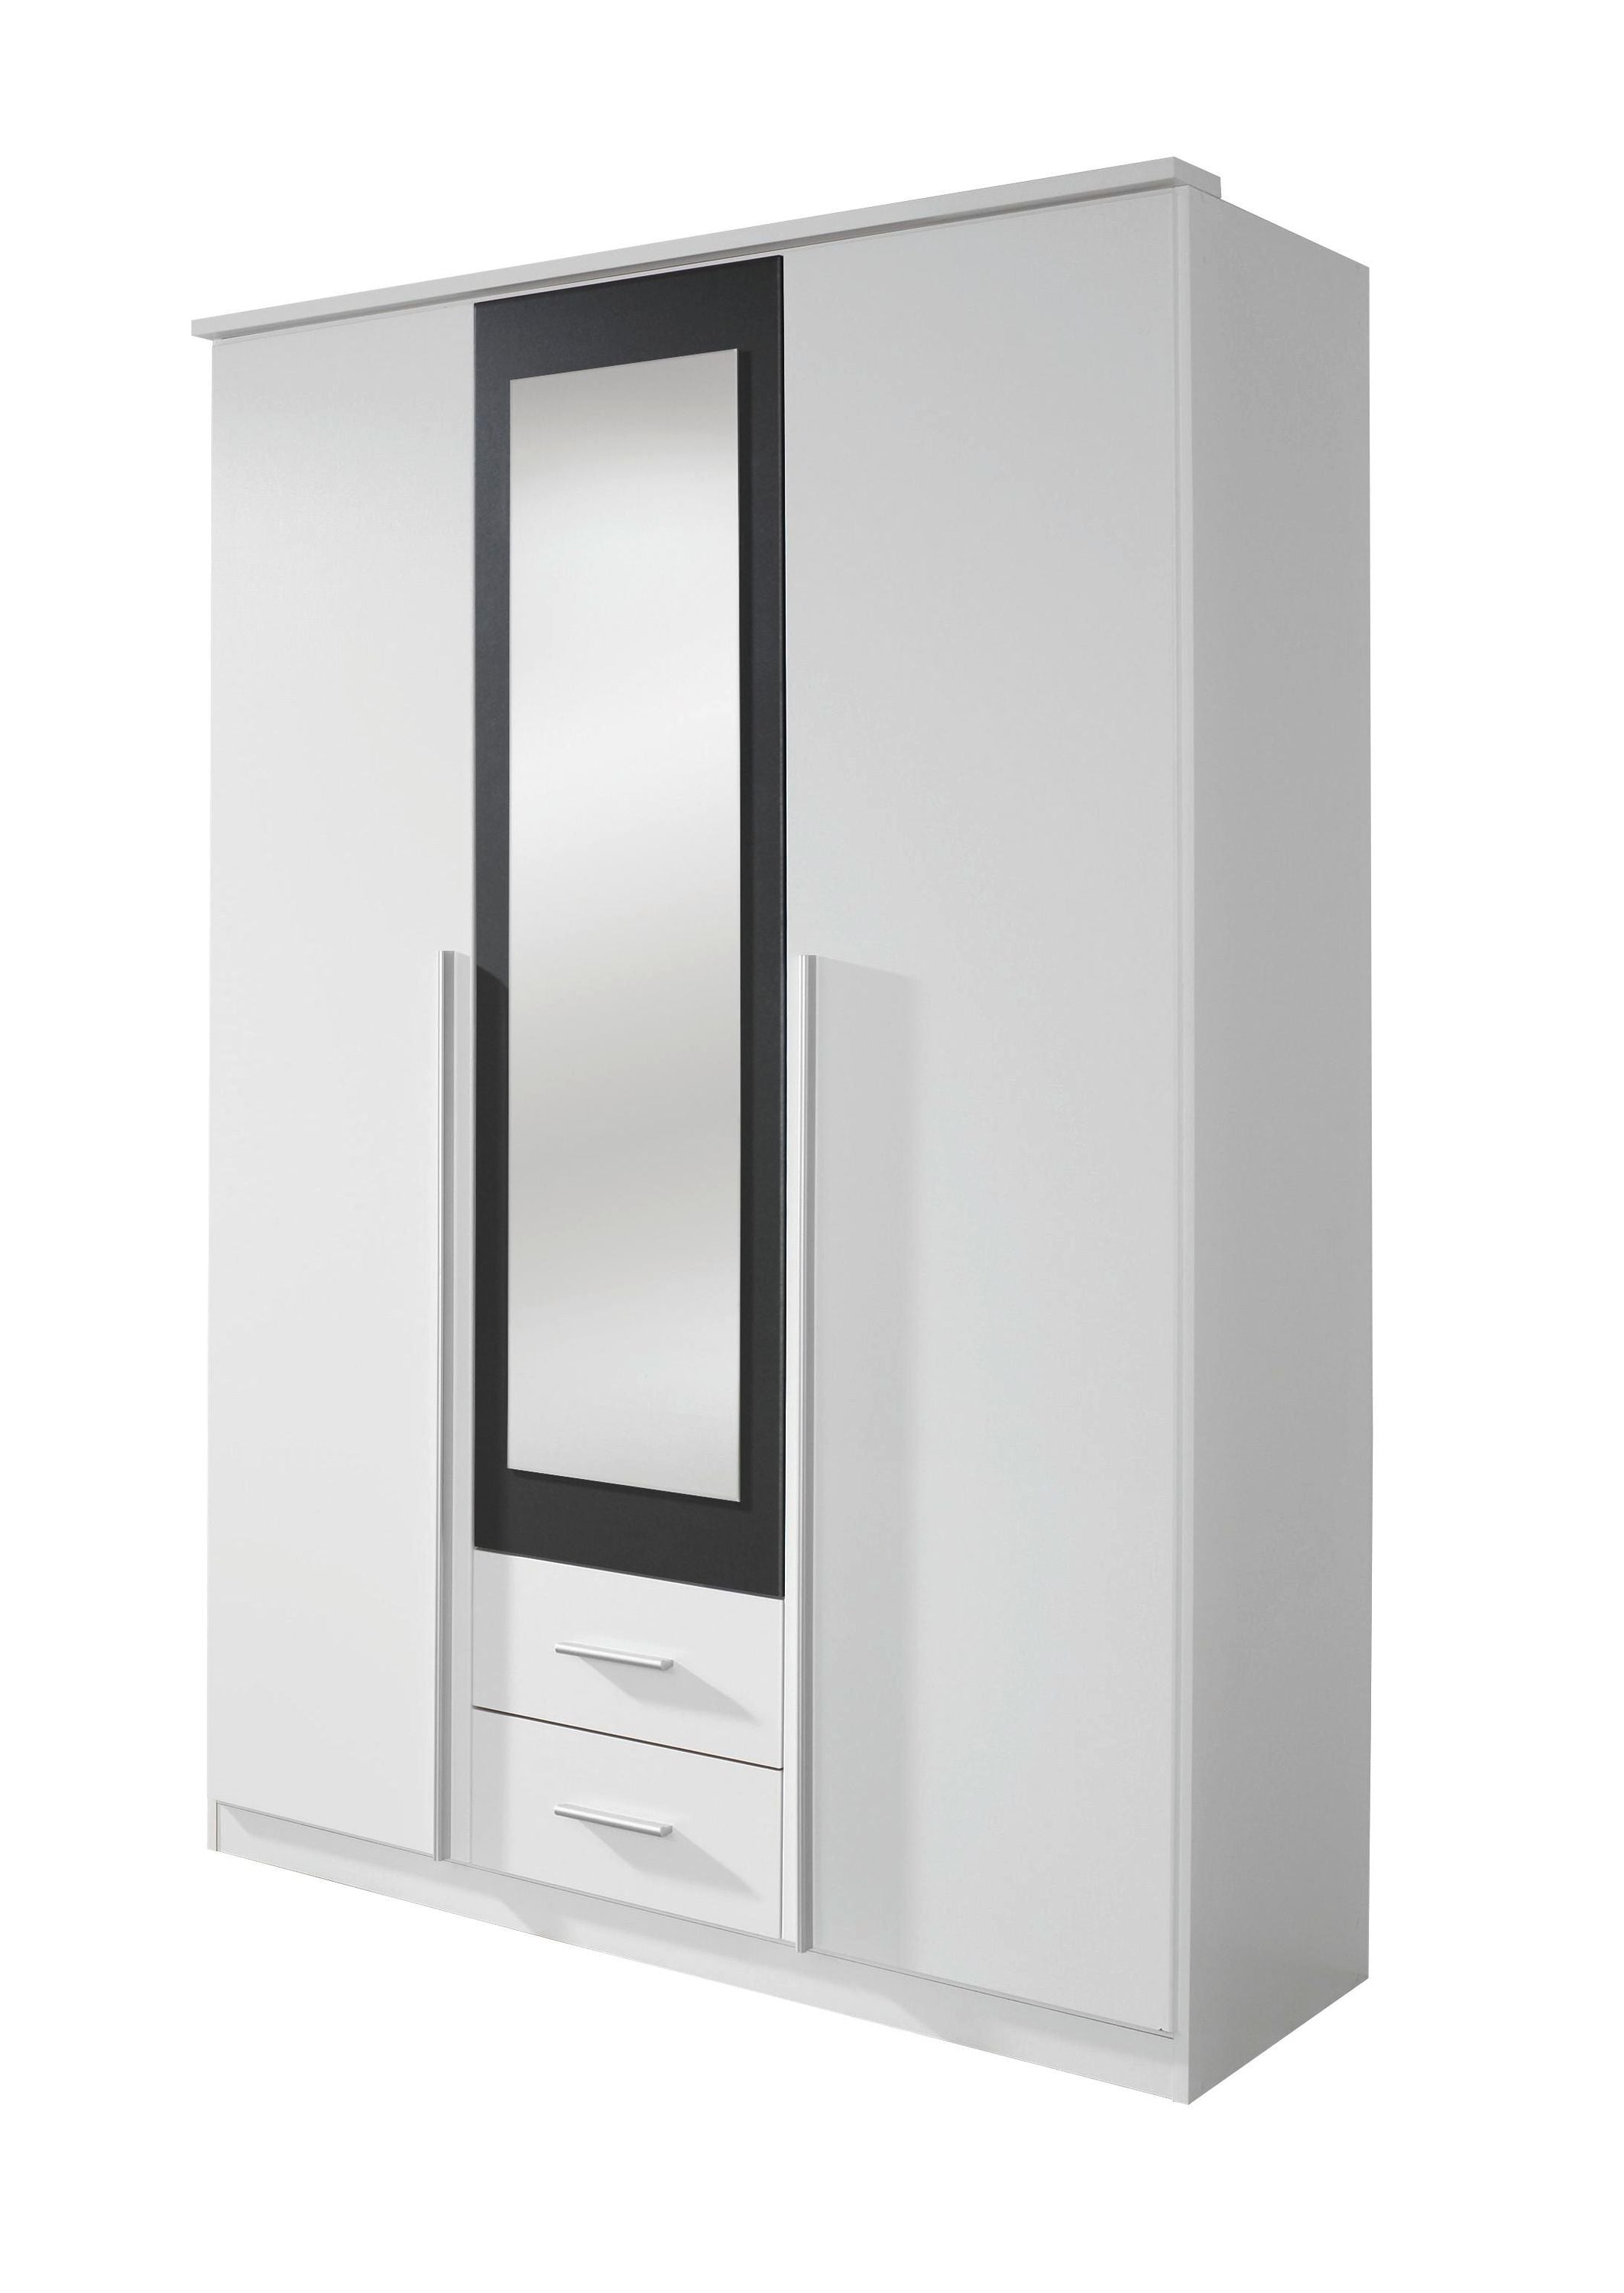 Kleiderschrank Basti mit Spiegeltür weiß - grau metallic 3 Türen B 136 cm H 199 cm